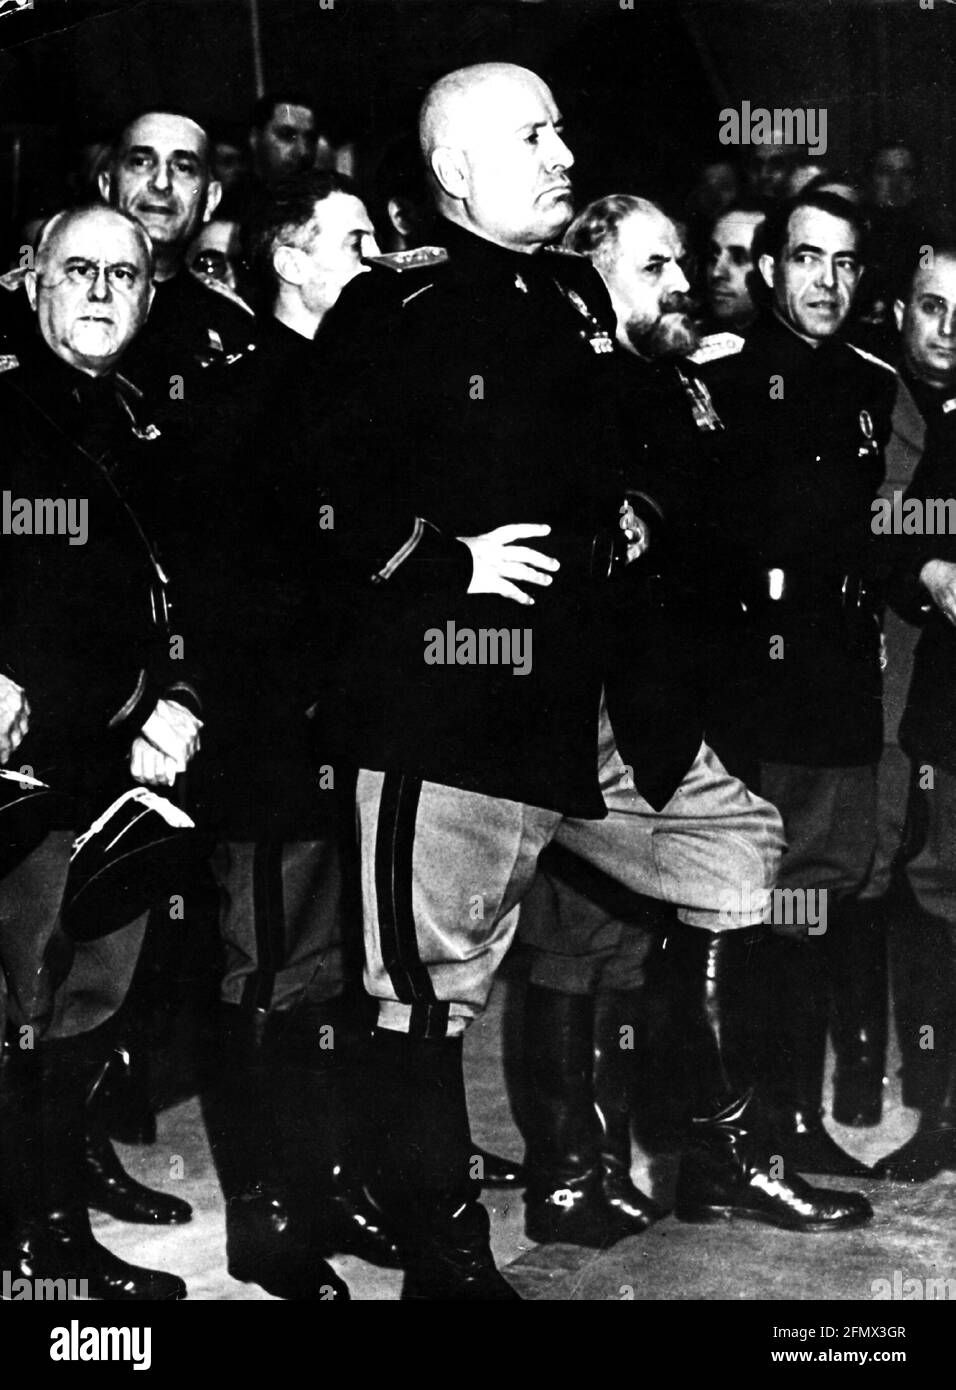 Mussolini, Benito, 29.7.1883 - 28.4.1945, politicien italien, Premier ministre 30.10.1922 - 25.7.1943, longueur totale, années 1930, USAGE ÉDITORIAL EXCLUSIF Banque D'Images